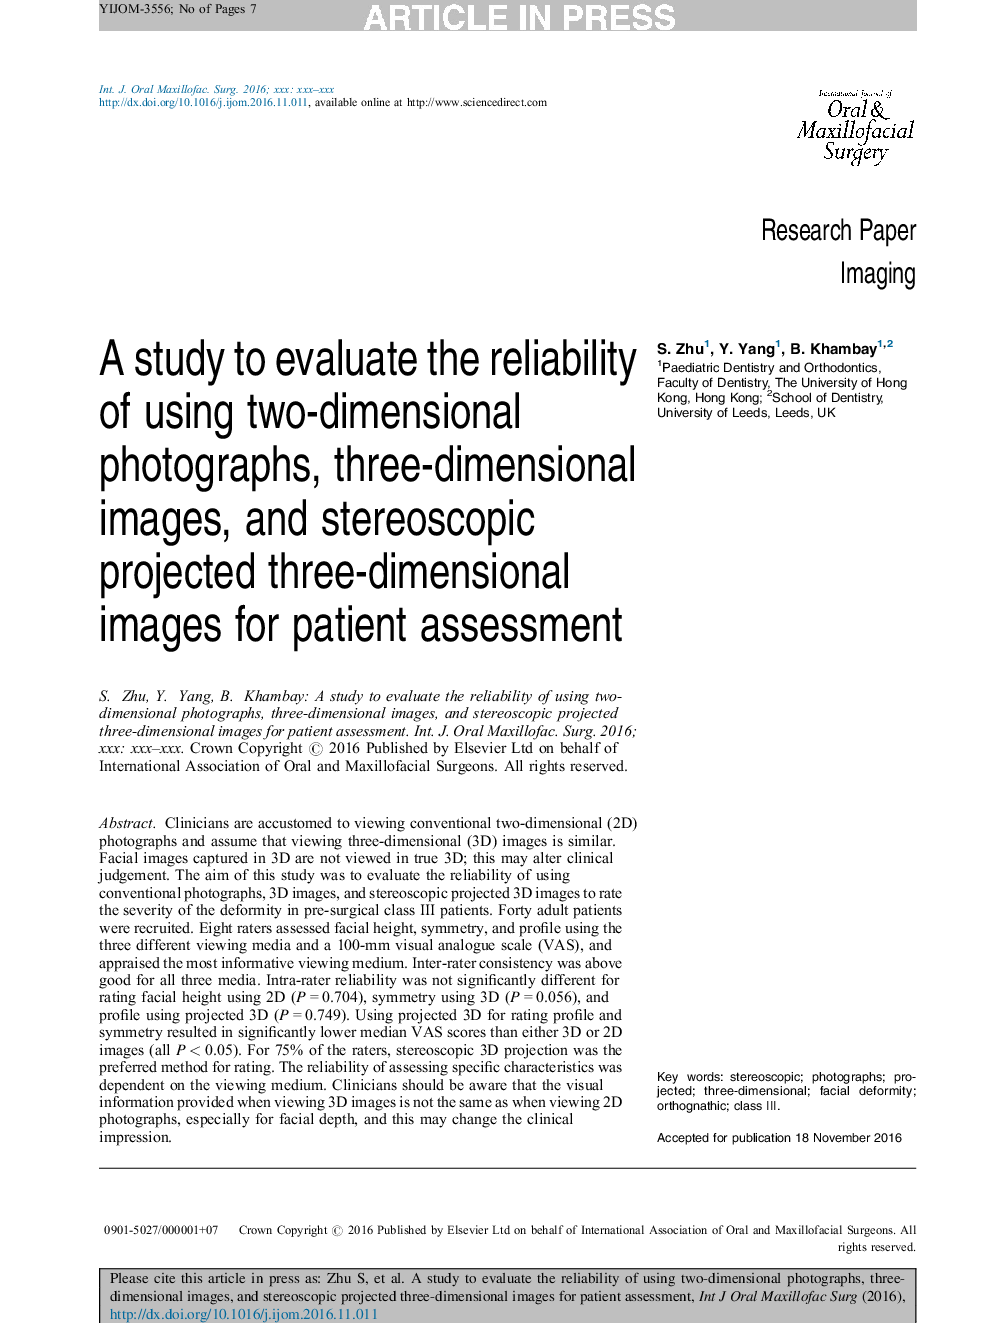 یک مطالعه برای ارزیابی قابلیت اطمینان از استفاده از عکس های دو بعدی، تصاویر سه بعدی و تصاویر سهبعدی پیش بینی شده ای است که برای بررسی بیمار انجام شده است. 